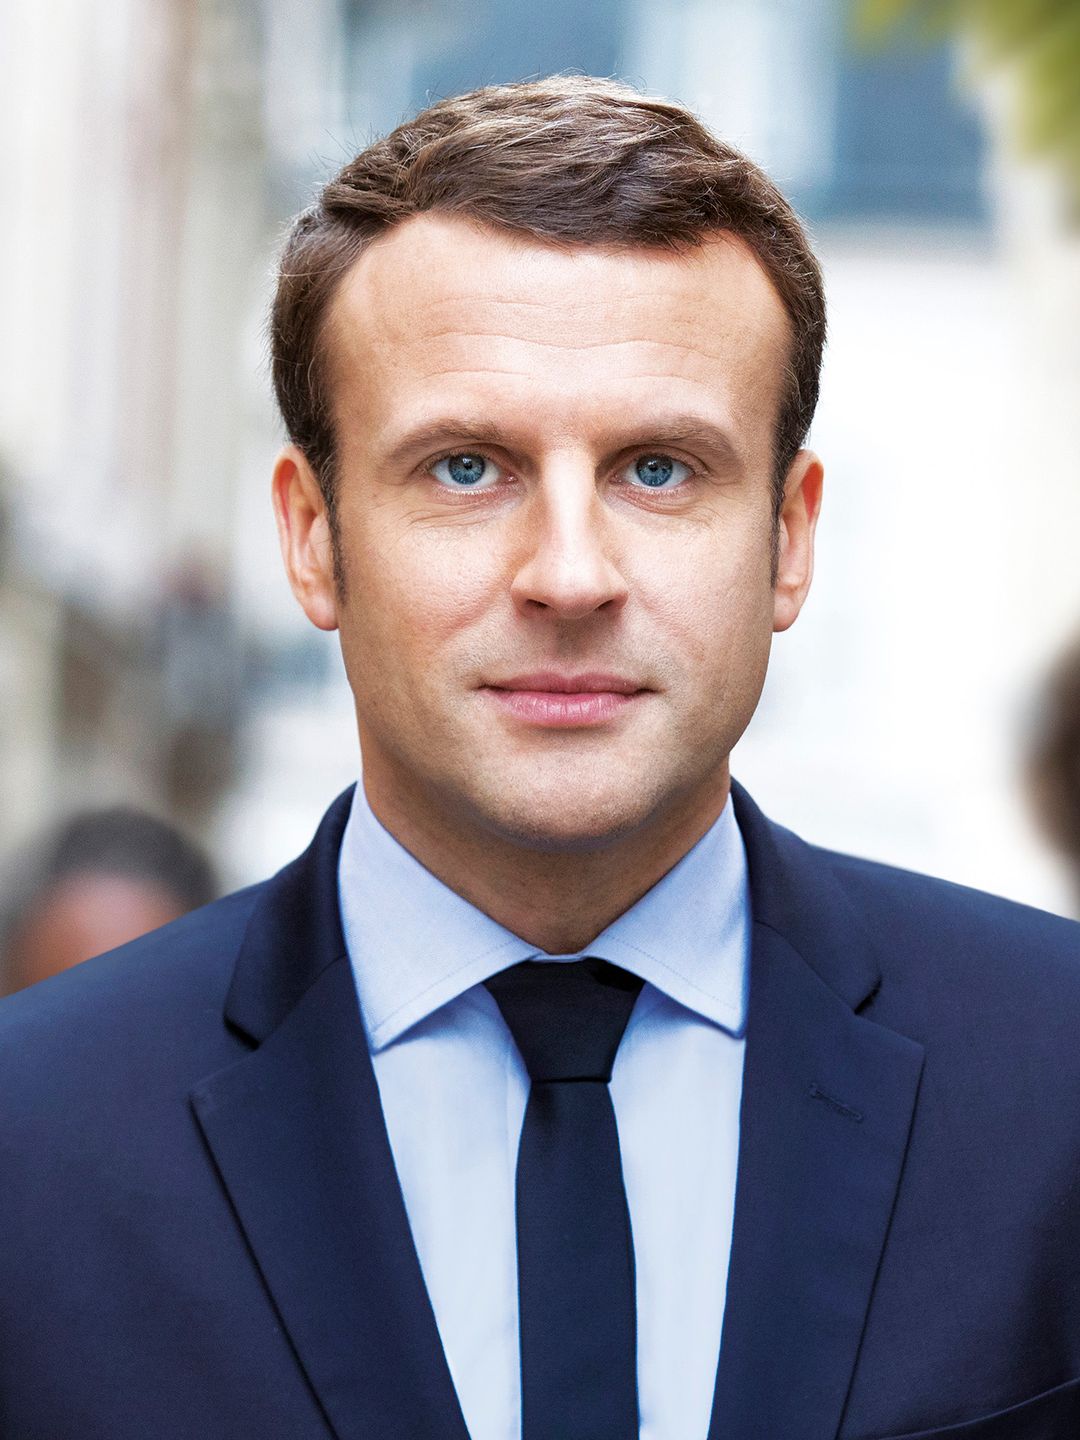 Emmanuel Macron net worth